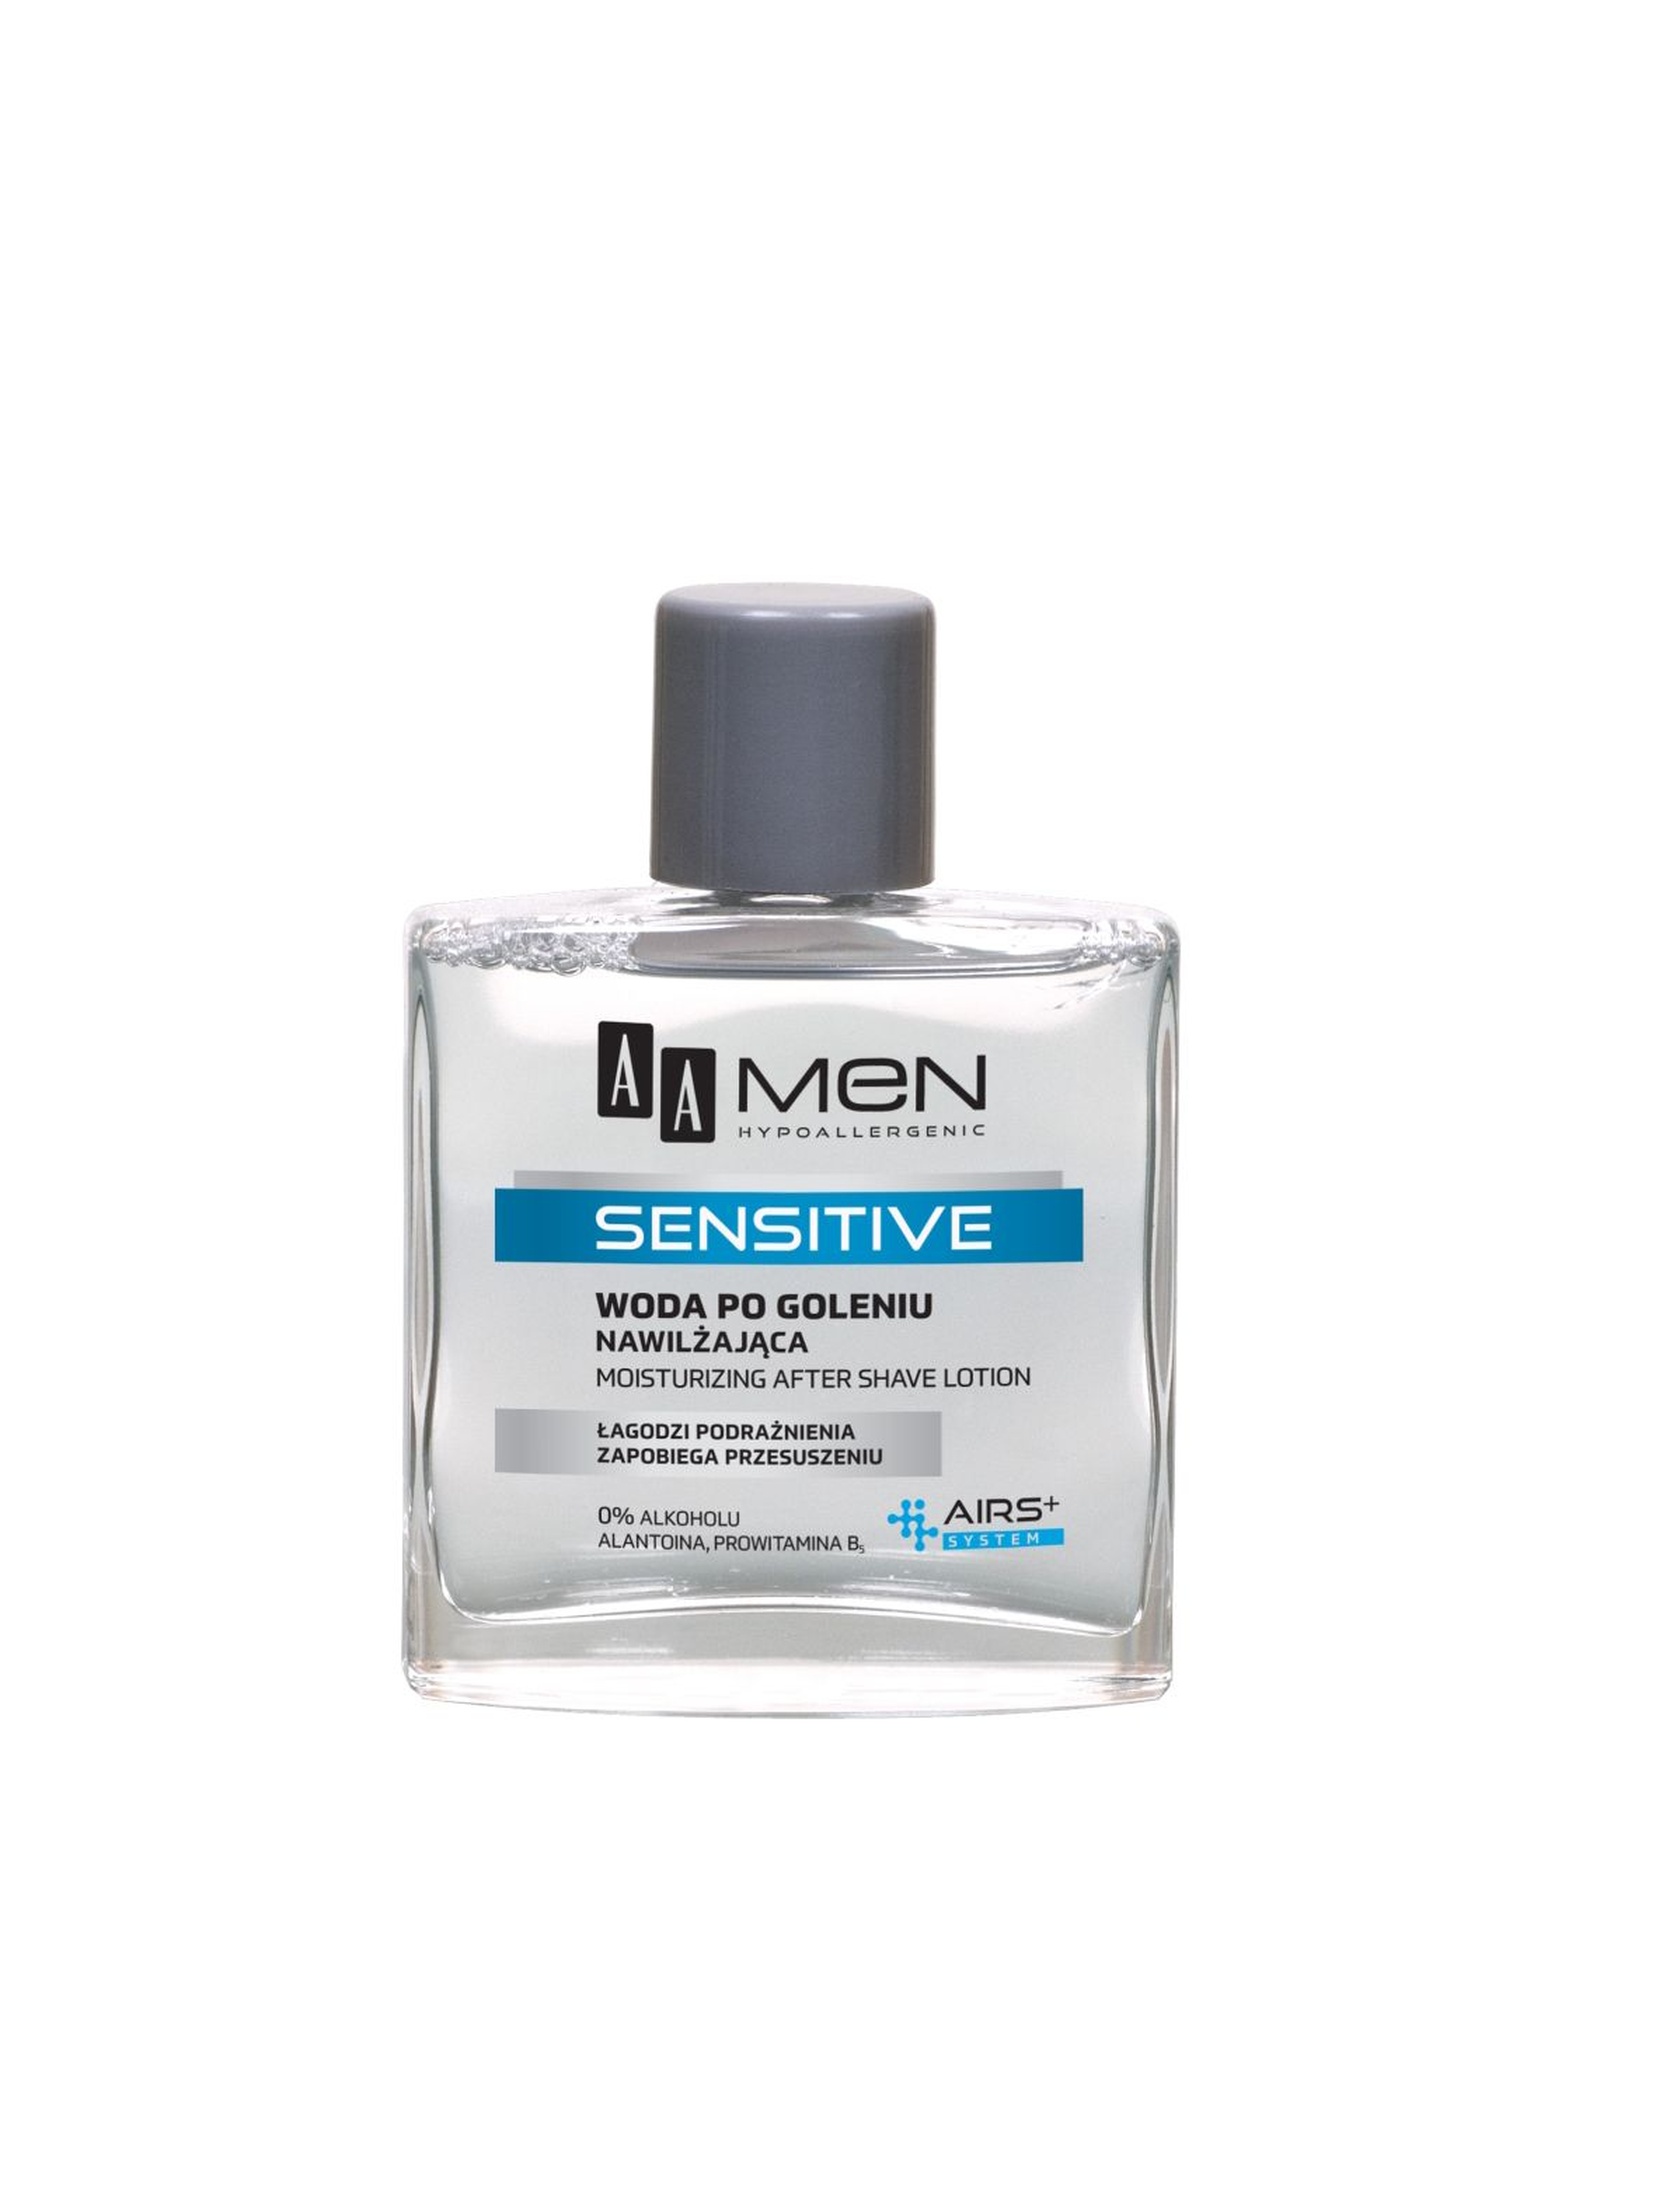 AA Men Sensitive Woda po goleniu nawilżająca 100 ml